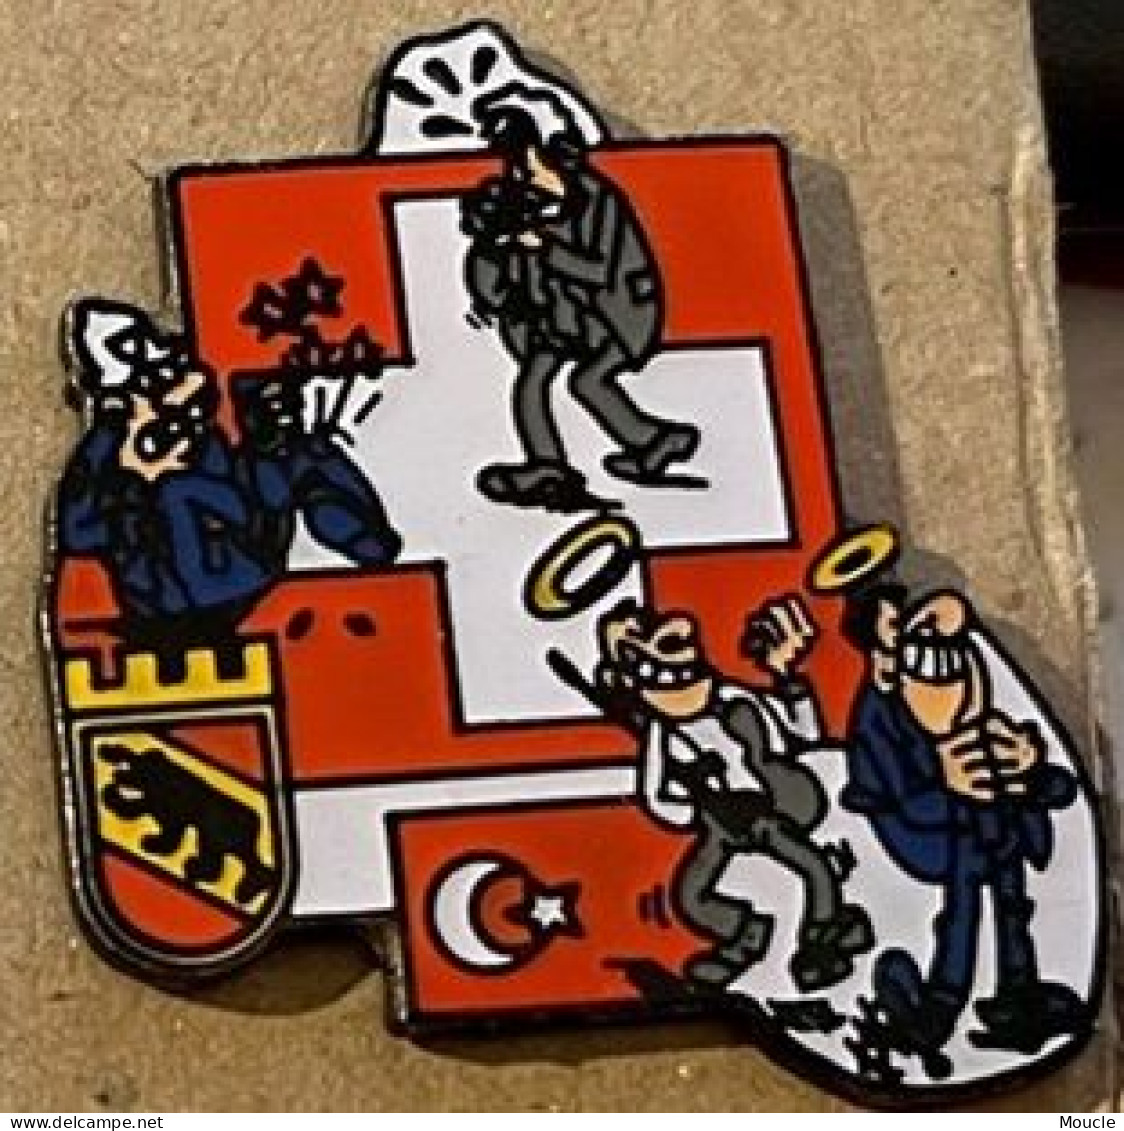 POLICE VILLE DE BERNE SUISSE - STADT POLIZEI BERN - SCHWEIZ - POLICIA - SWITZERLAND - TURC  -  (33) - Policia